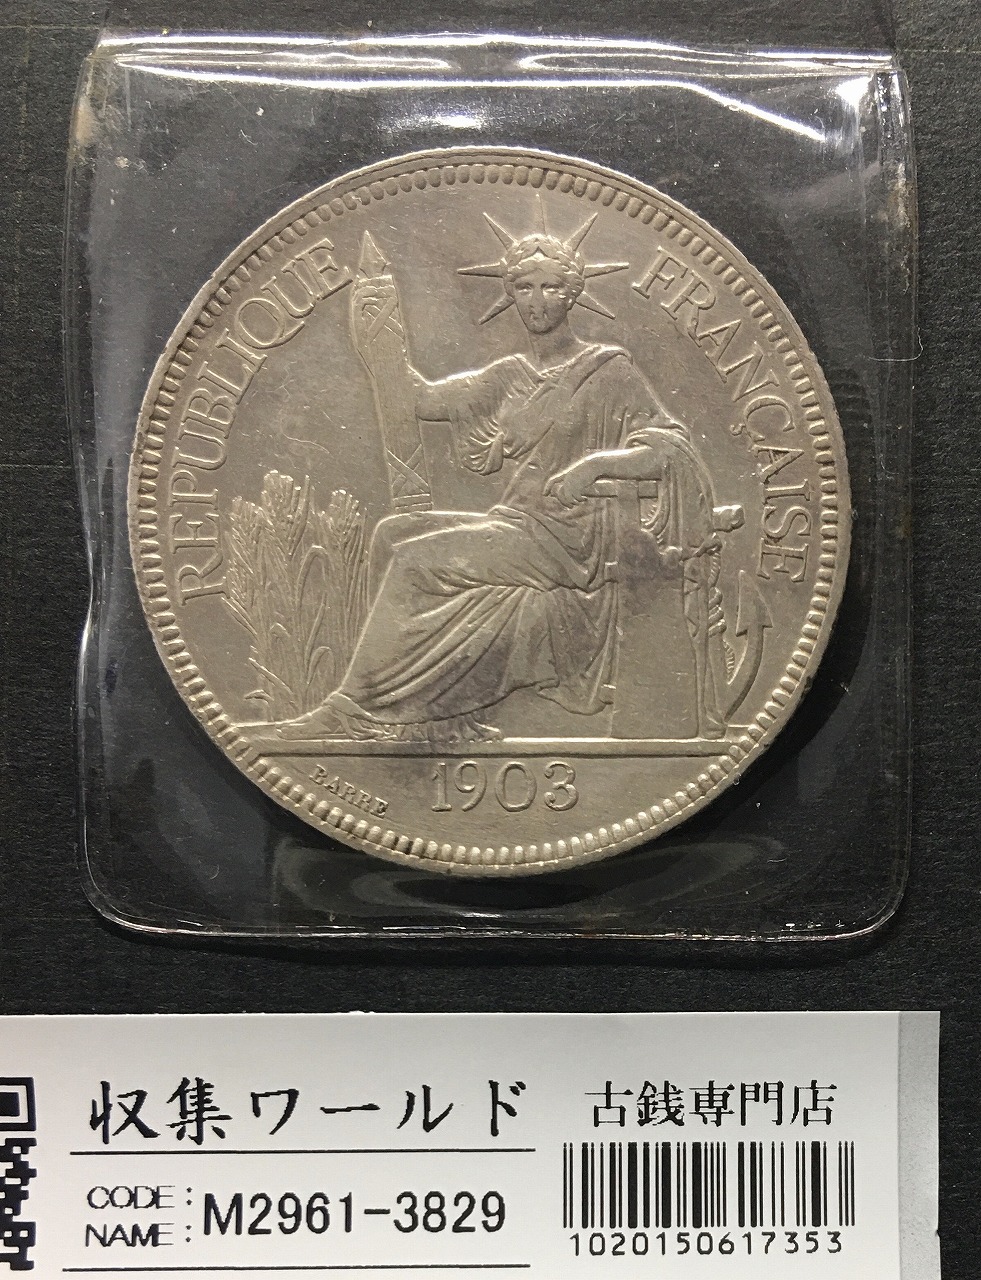 【廃盤商品】フランス領インドシナ1ピアストル銀貨1908 コレクション